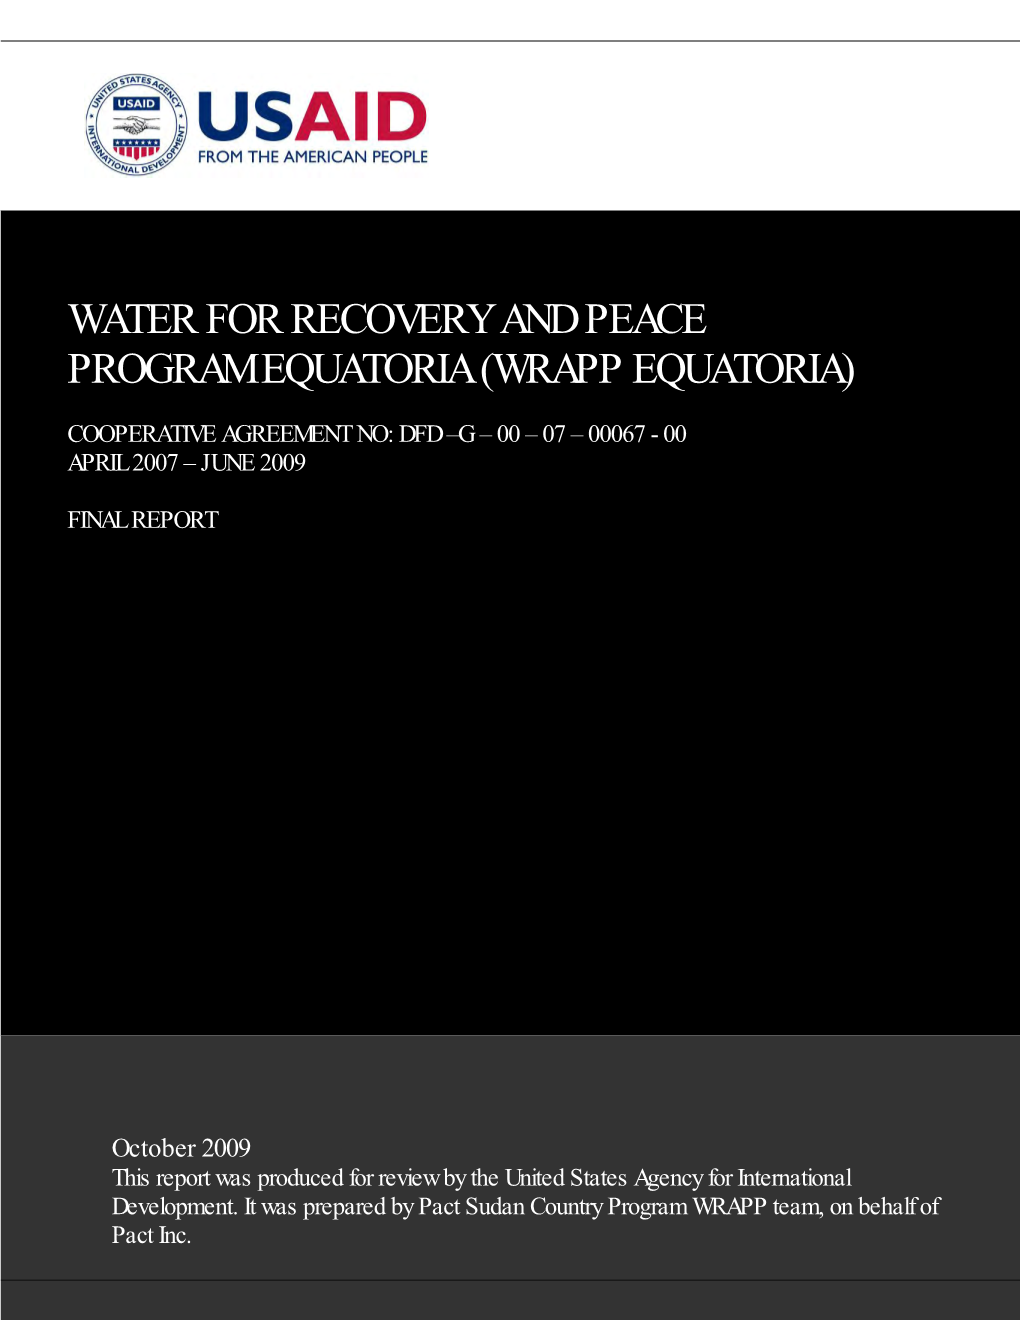 Water for Recovery and Peace Program Equatoria (Wrapp Equatoria)